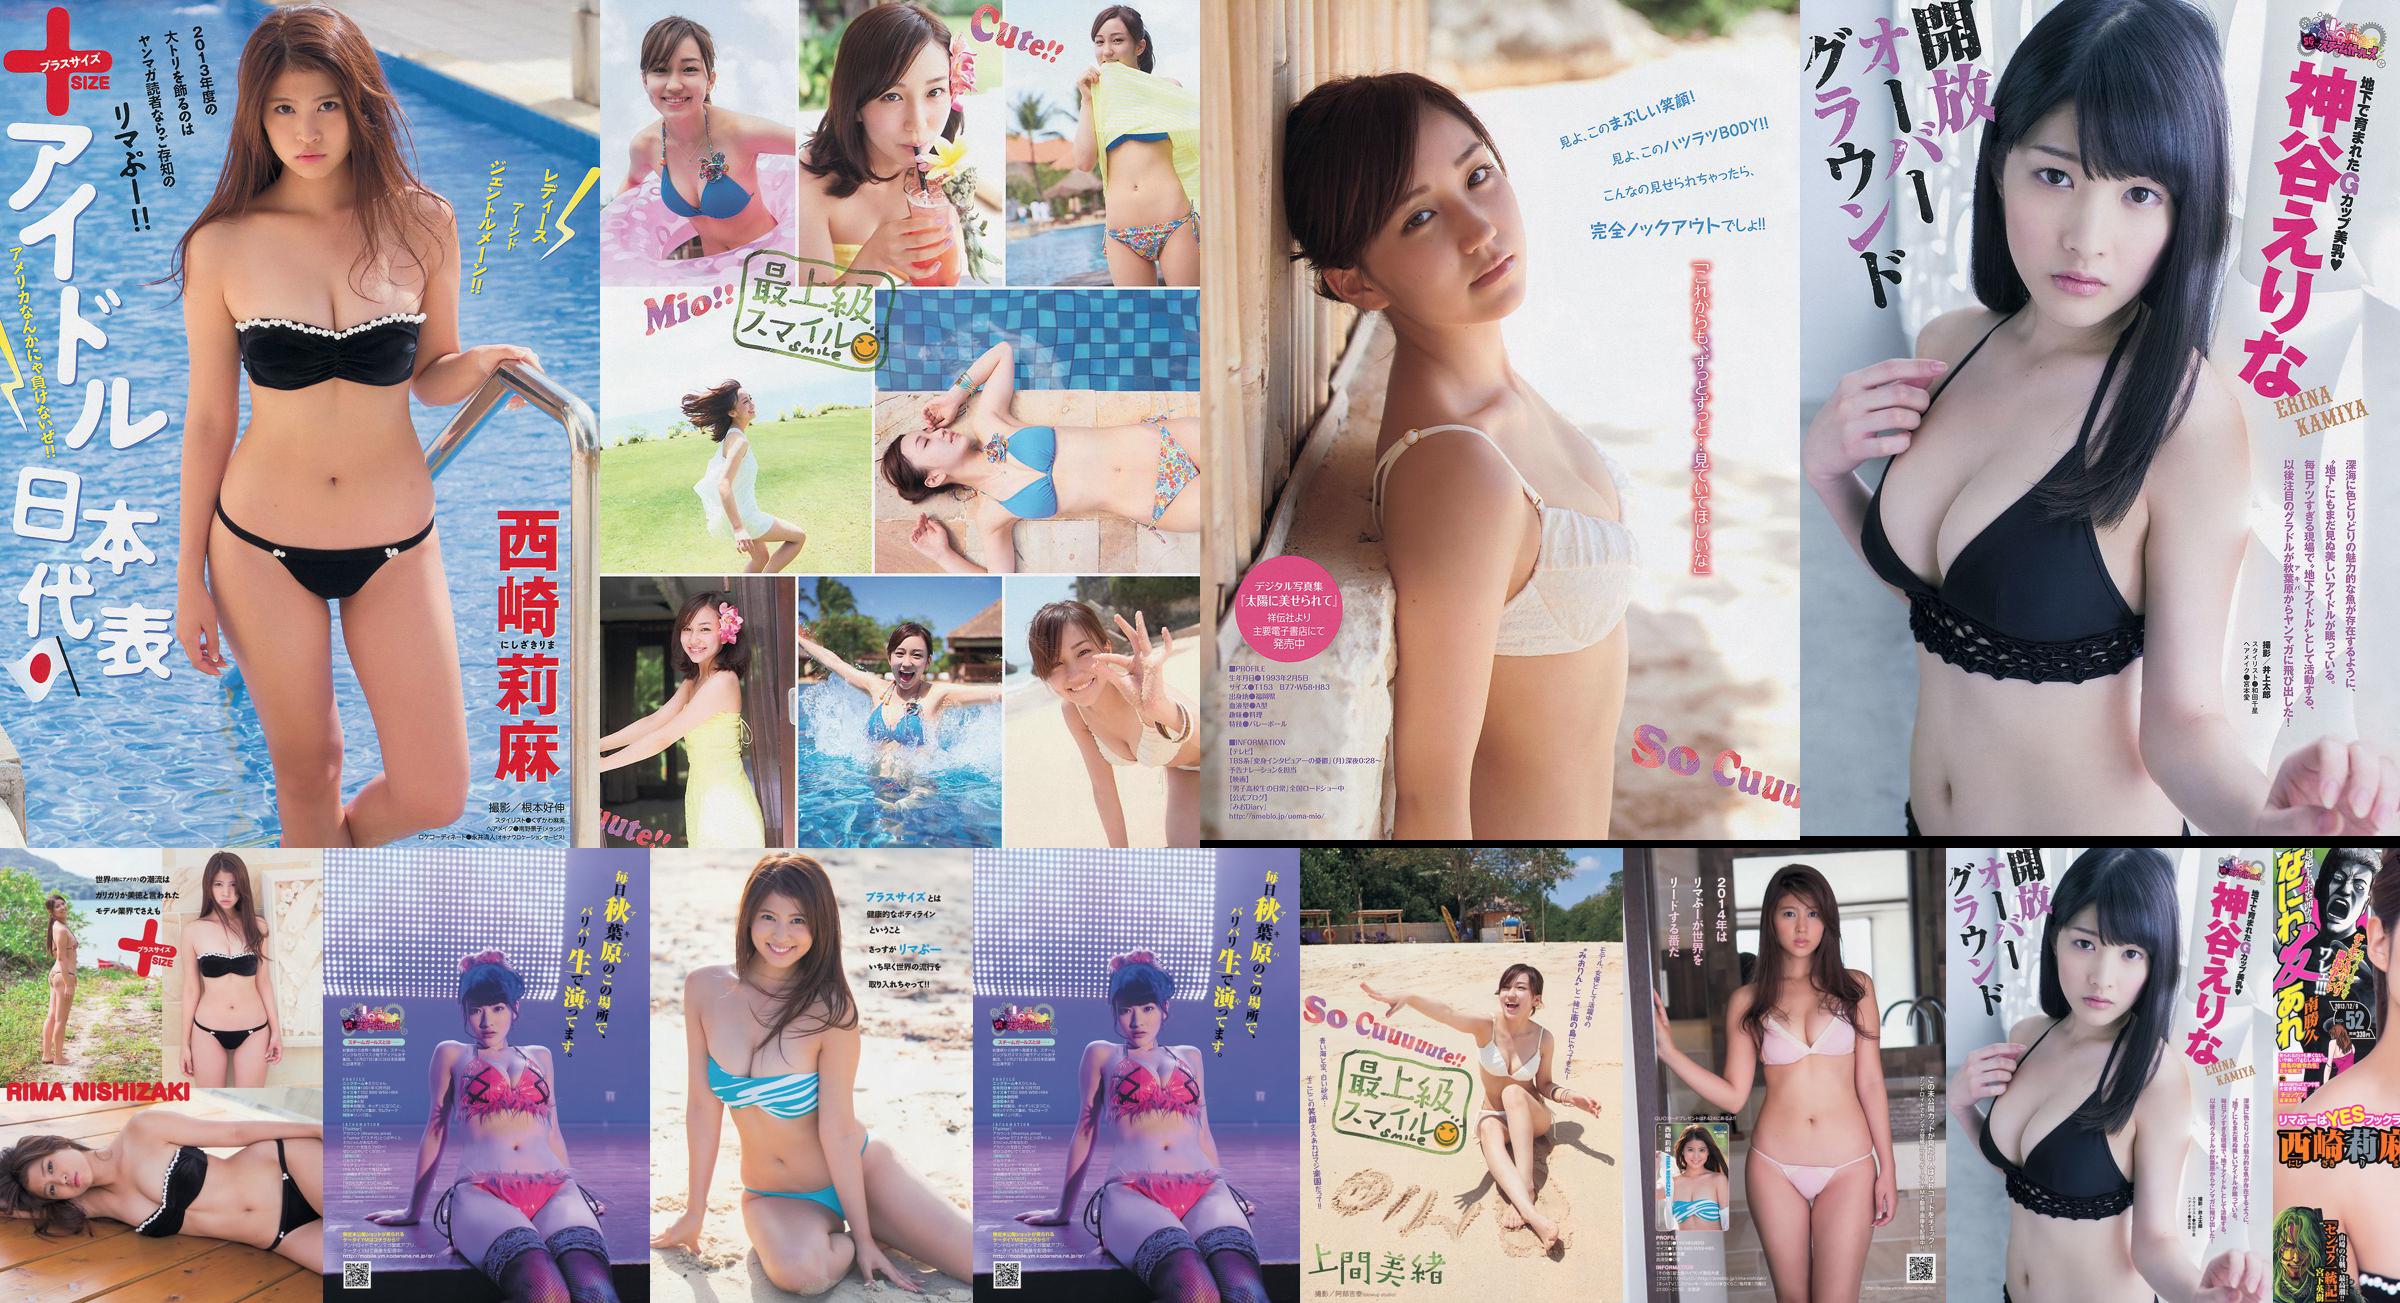 [Junge Zeitschrift] Rima Nishizaki Mio Uema Erina Kamiya 2013 Nr. 52 Foto Moshi No.b4a168 Seite 1